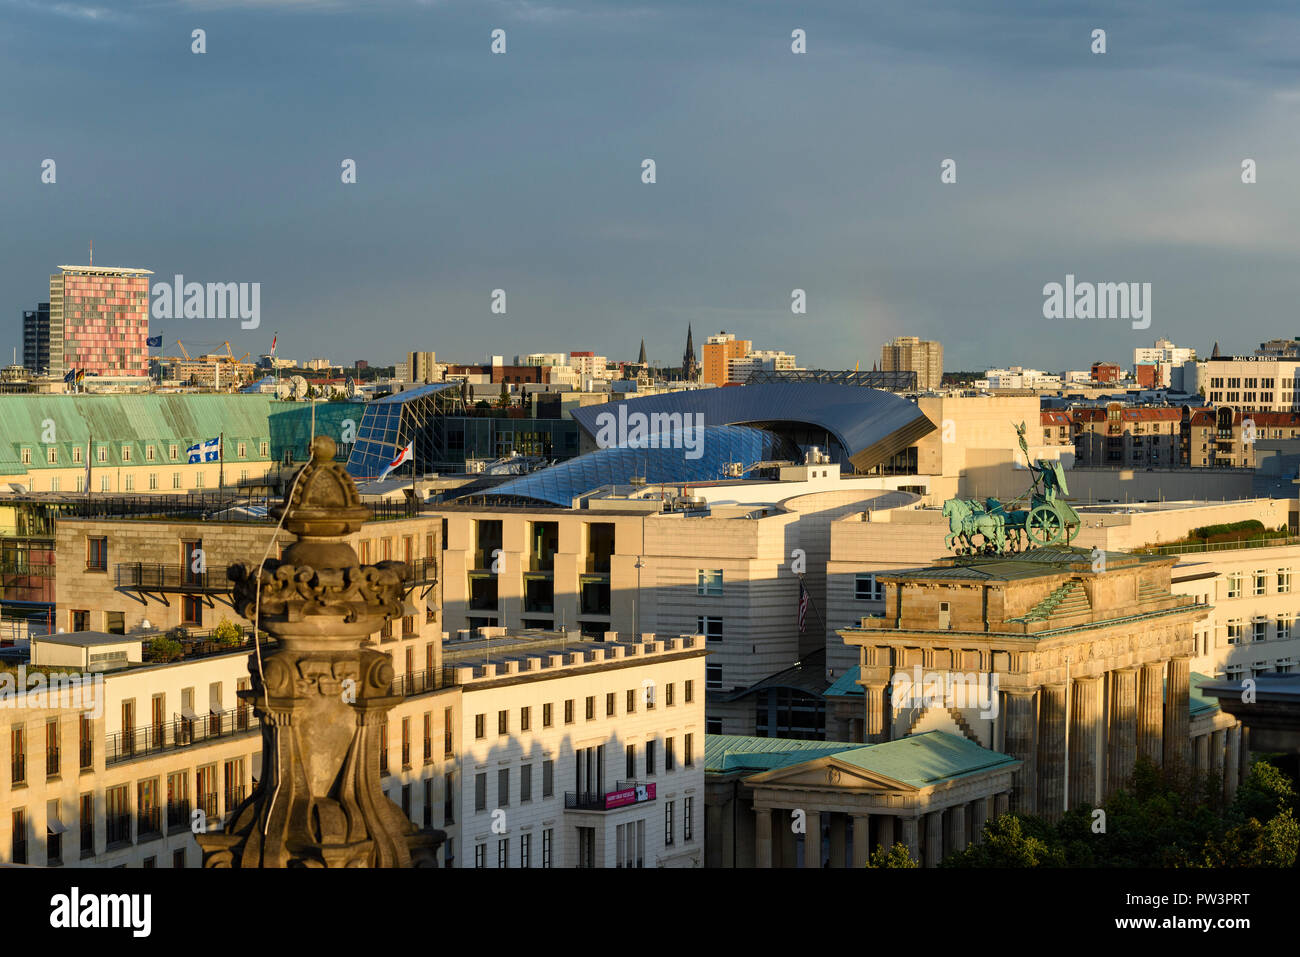 Berlín. Alemania. Berlin skyline elevadas con vistas a la Puerta de Brandenburgo (Brandenburger Tor) y edificios en la Pariser Platz, el vidrio distintivo r Foto de stock